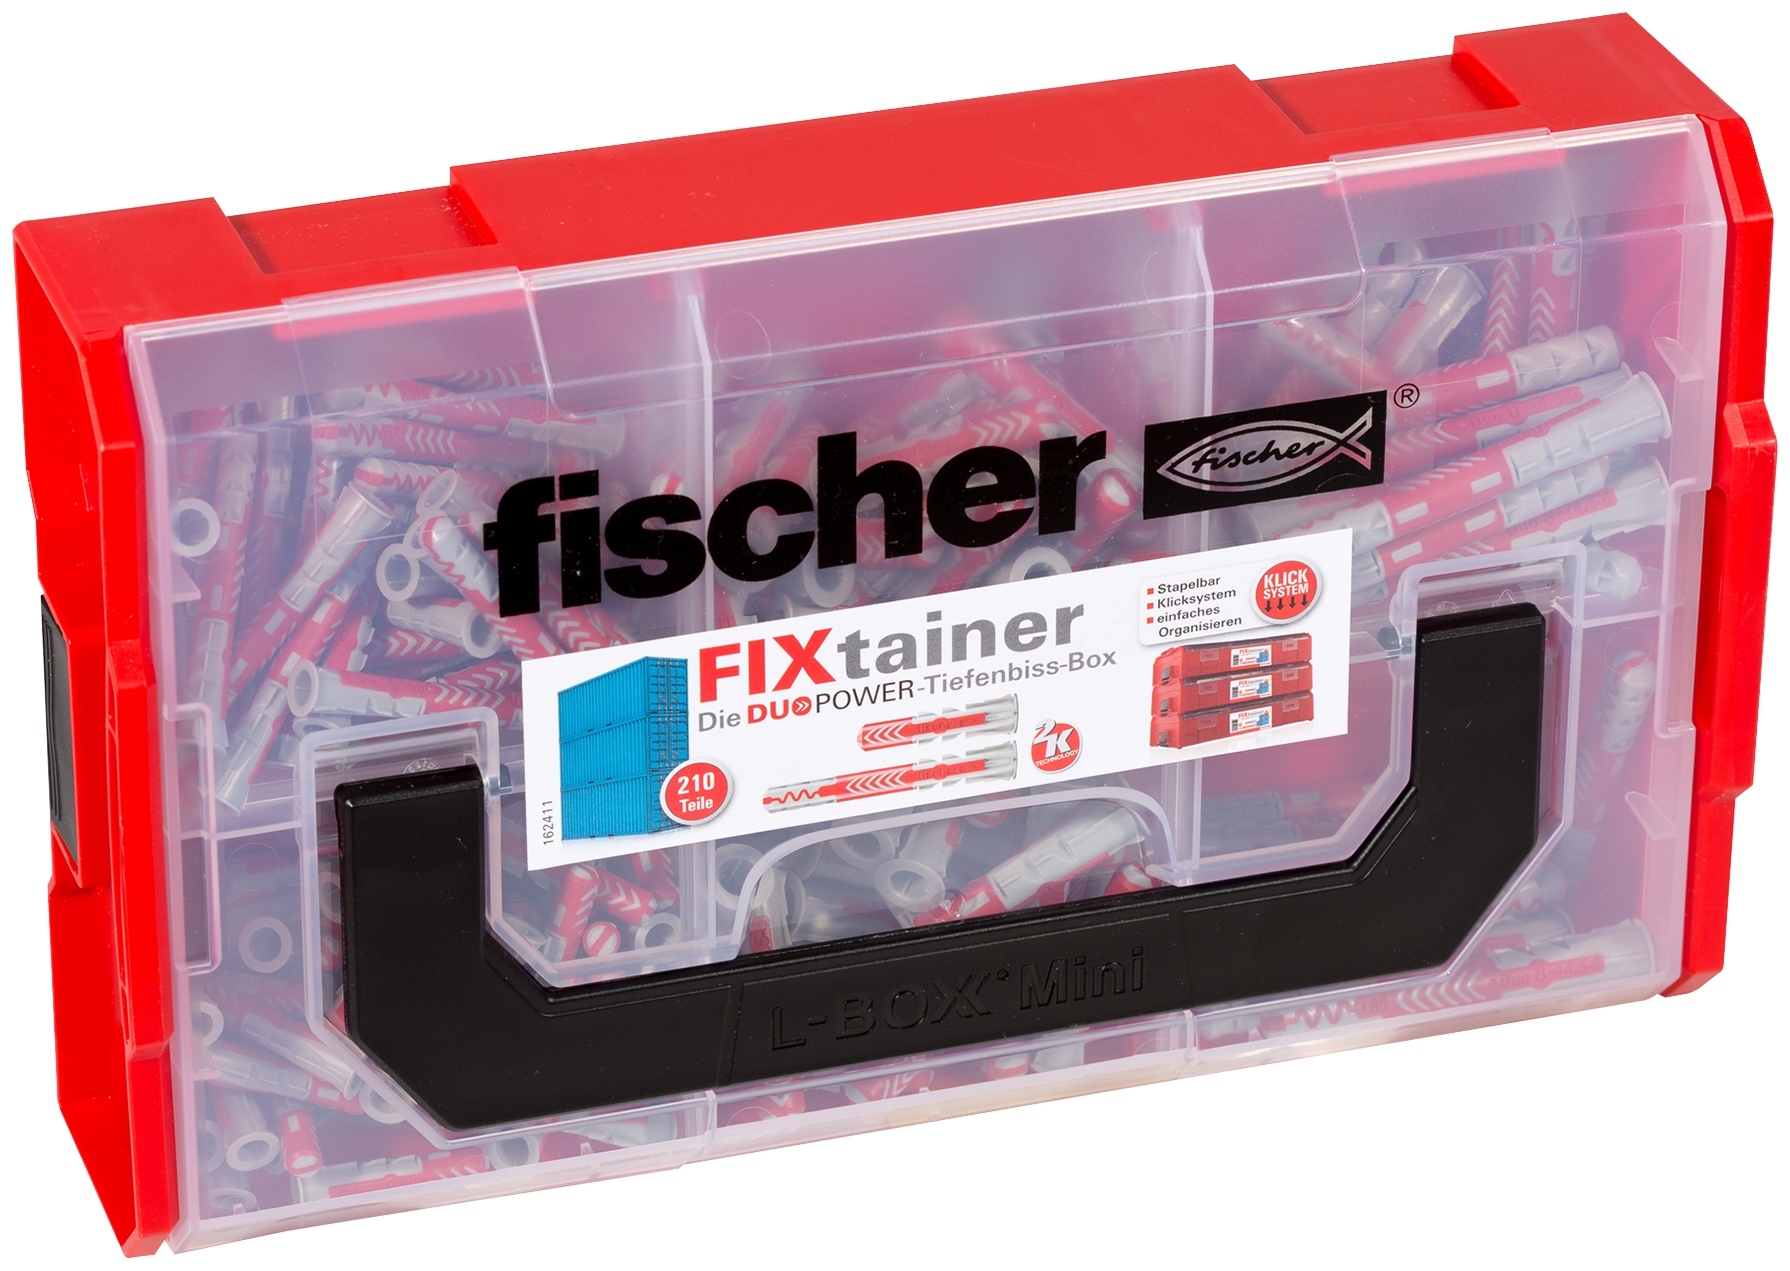 Fischer FixTainer DuoPower kurz/lang. Fischer FixTainer - mit dem Duo aus Power und Schlauer